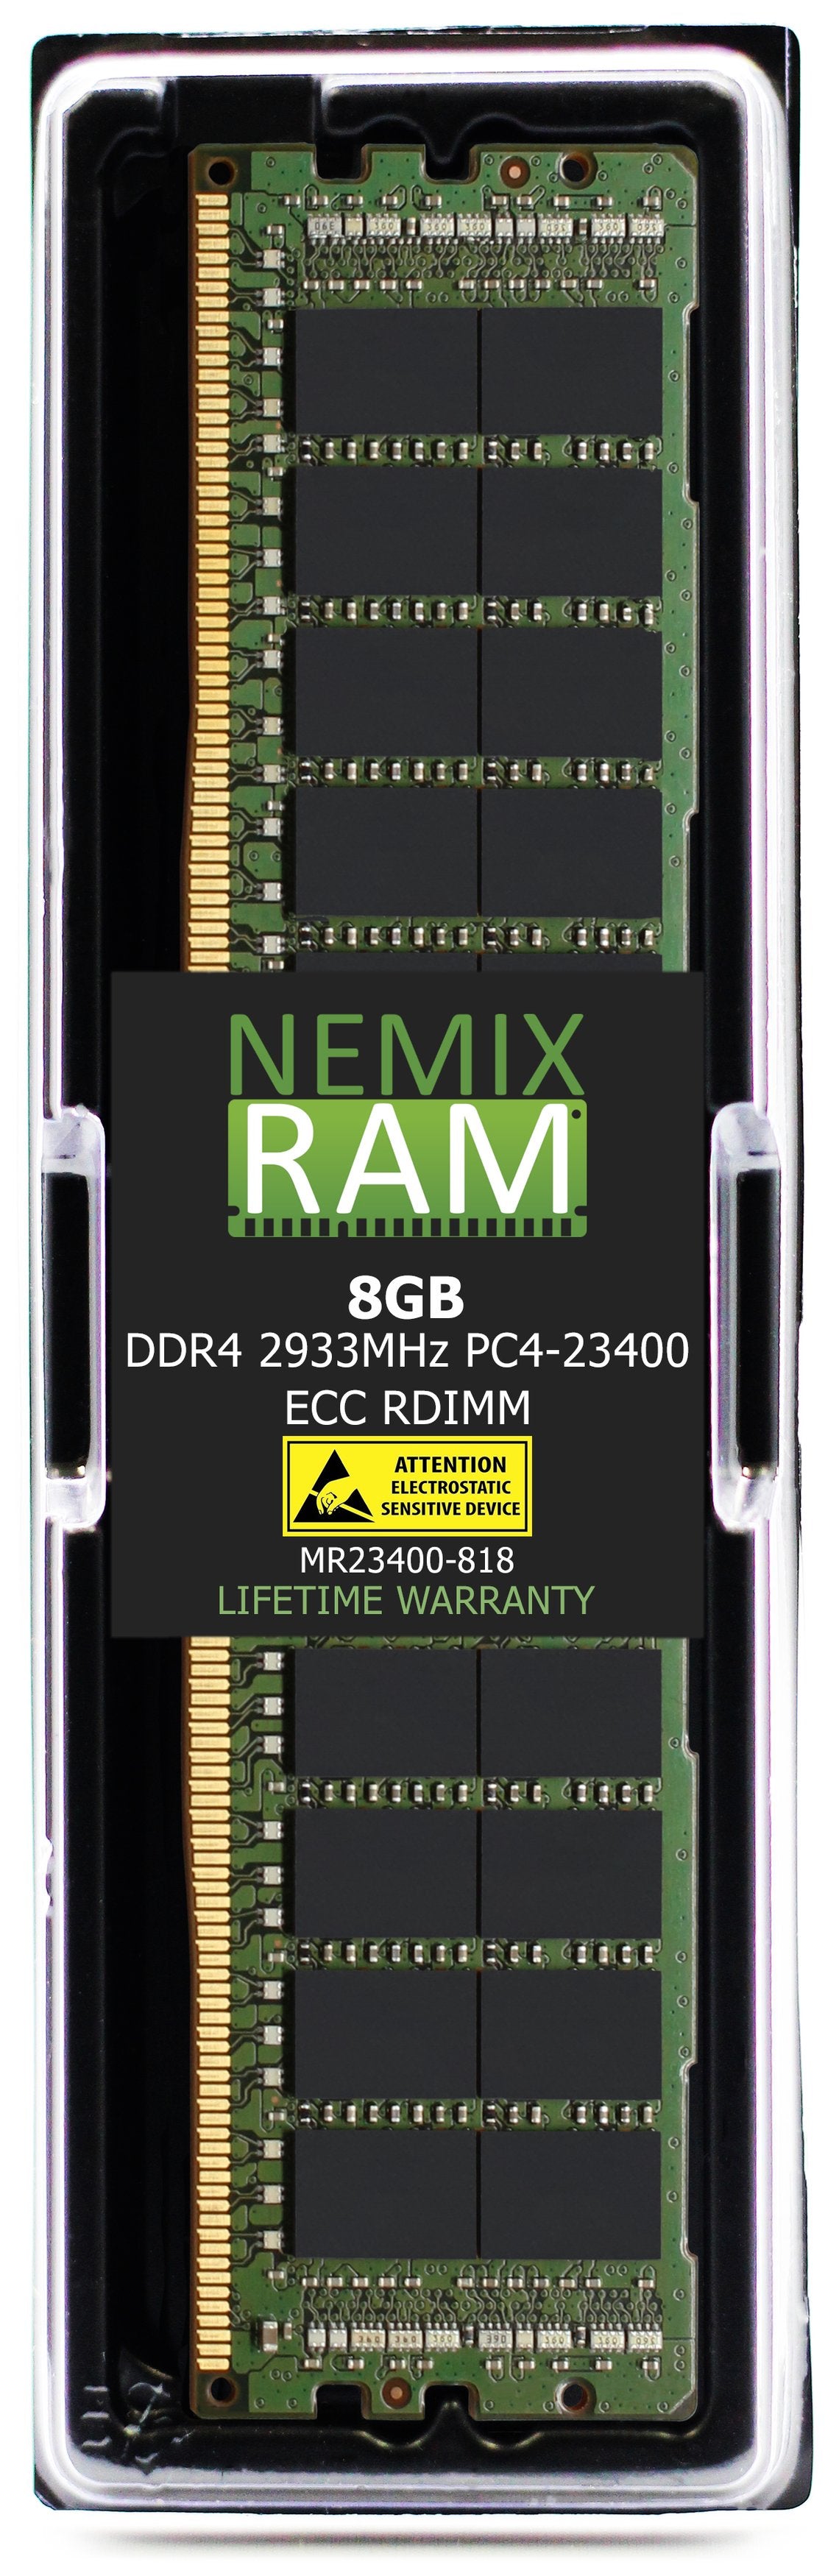 Hynix HMA81GR7DJR8N-WM 8GB DDR4 2933MHZ PC4-23400 RDIMM Compatible Memory Module